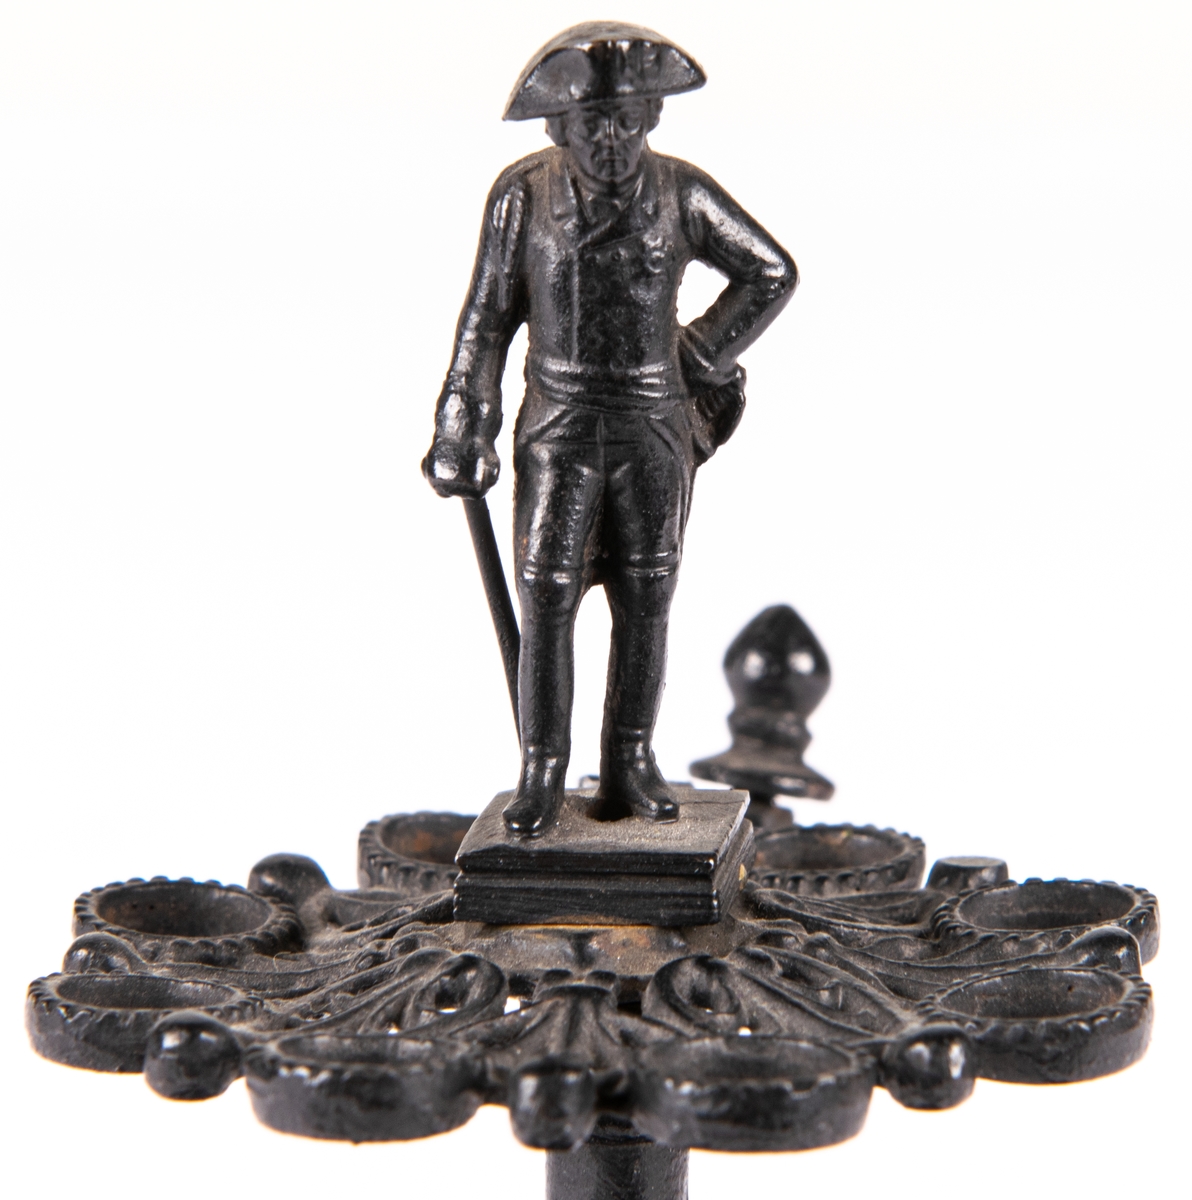 Cigarrställ med cigarrsnoppare på sidan. Av svartlackat gjutjärn. Könt med modell av Fredrik den store av Preussen.